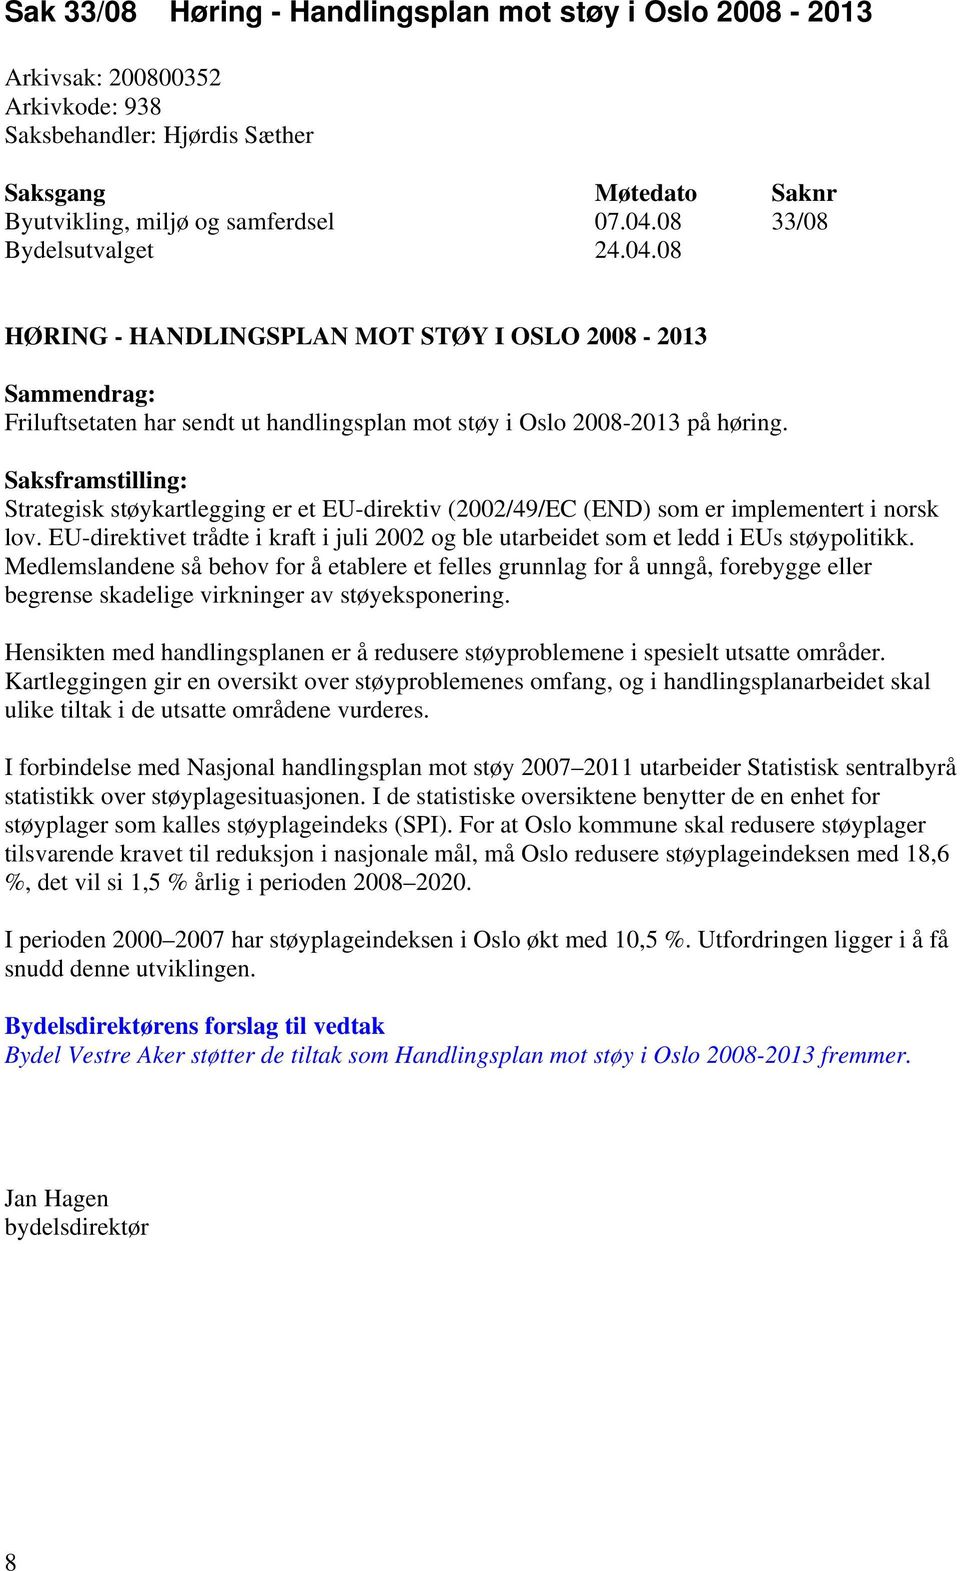 Saksframstilling: Strategisk støykartlegging er et EU-direktiv (2002/49/EC (END) som er implementert i norsk lov.